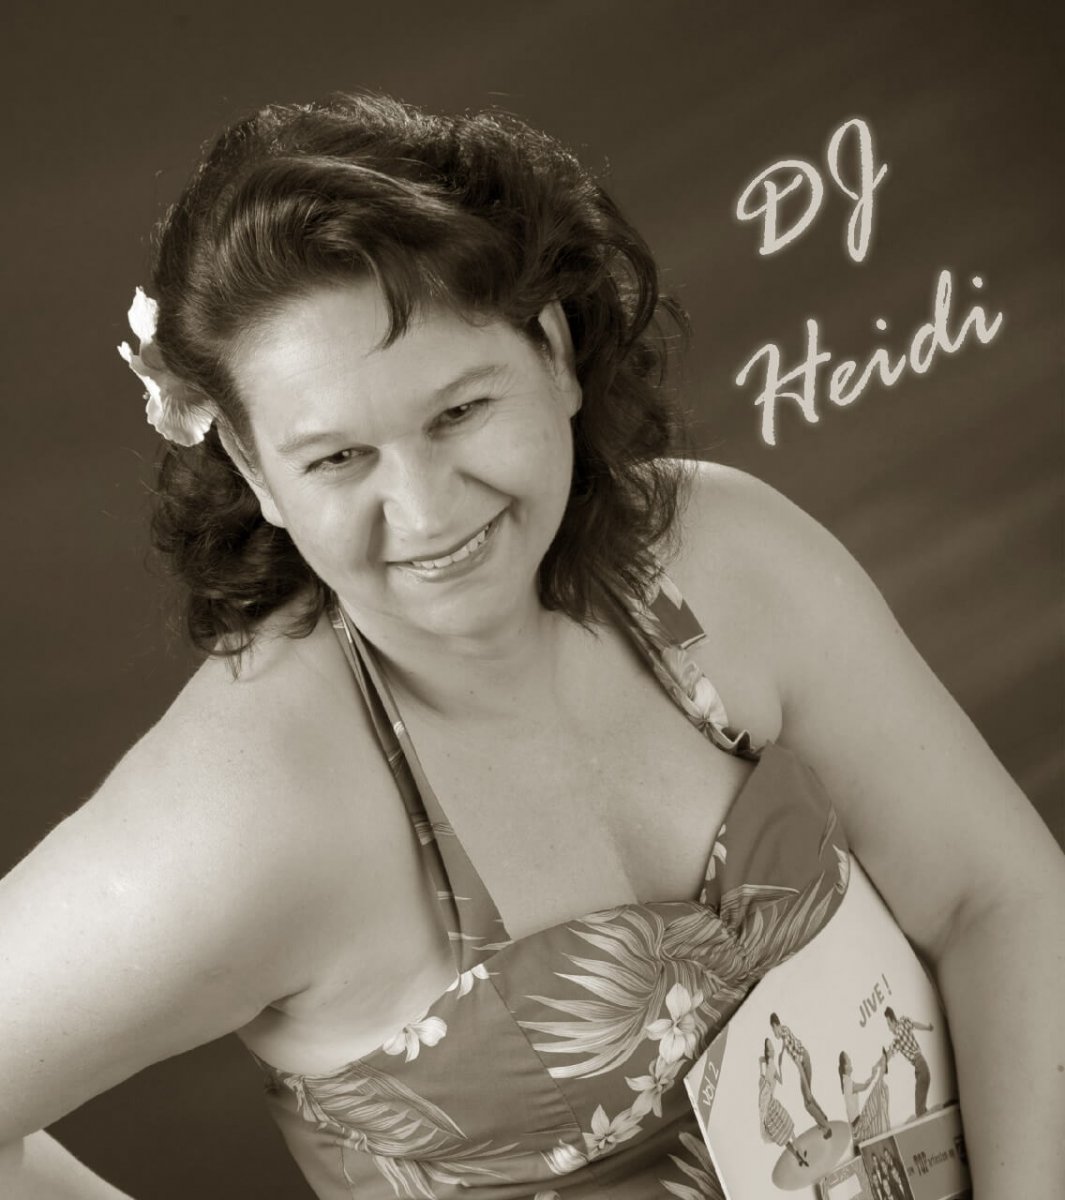 DJ Heidi